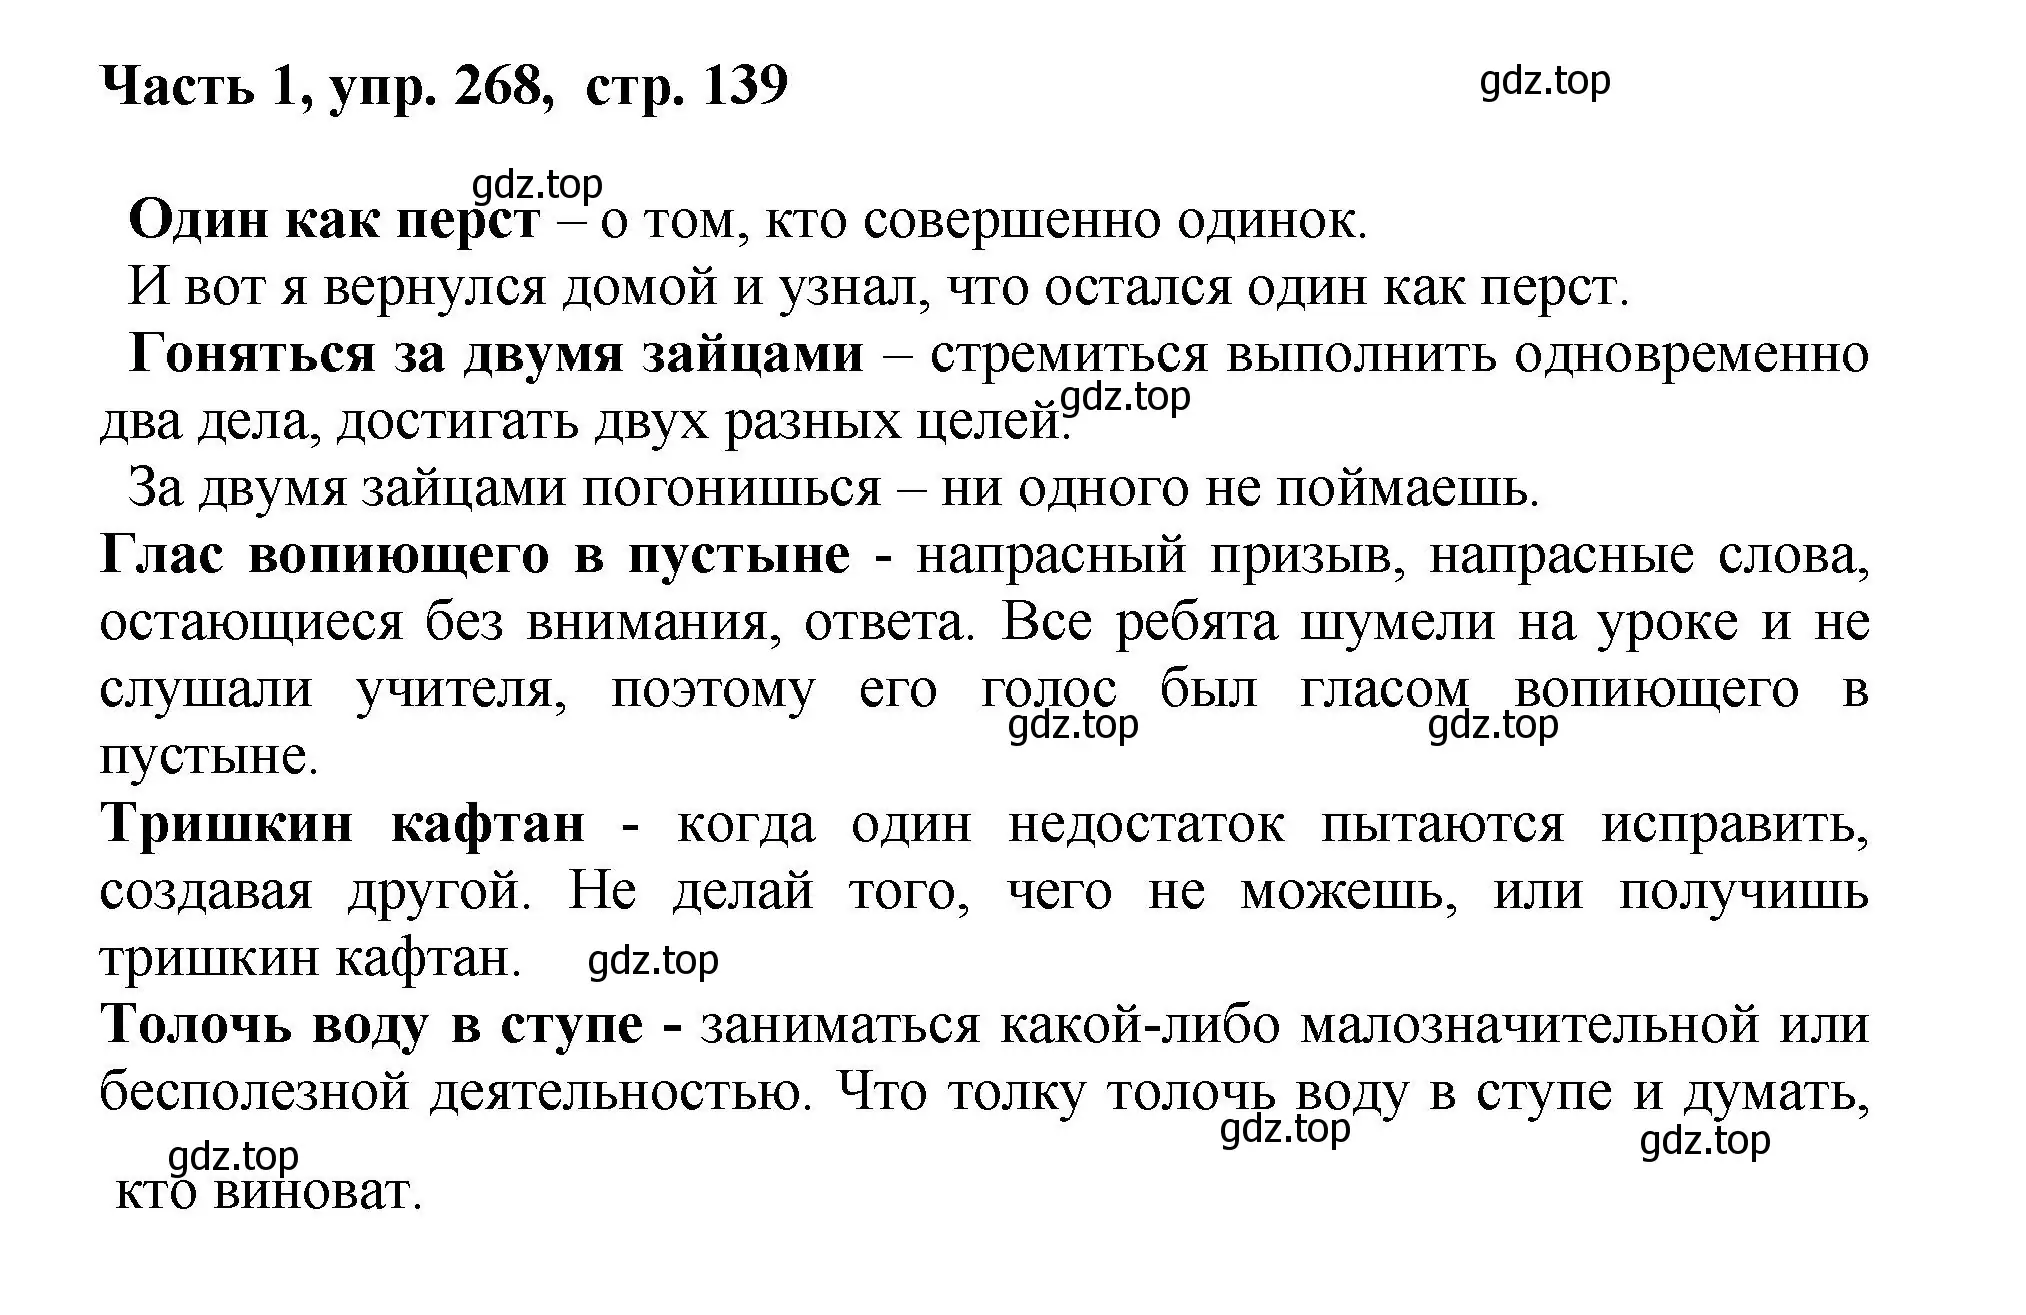 Решение номер 268 (страница 139) гдз по русскому языку 6 класс Баранов, Ладыженская, учебник 1 часть